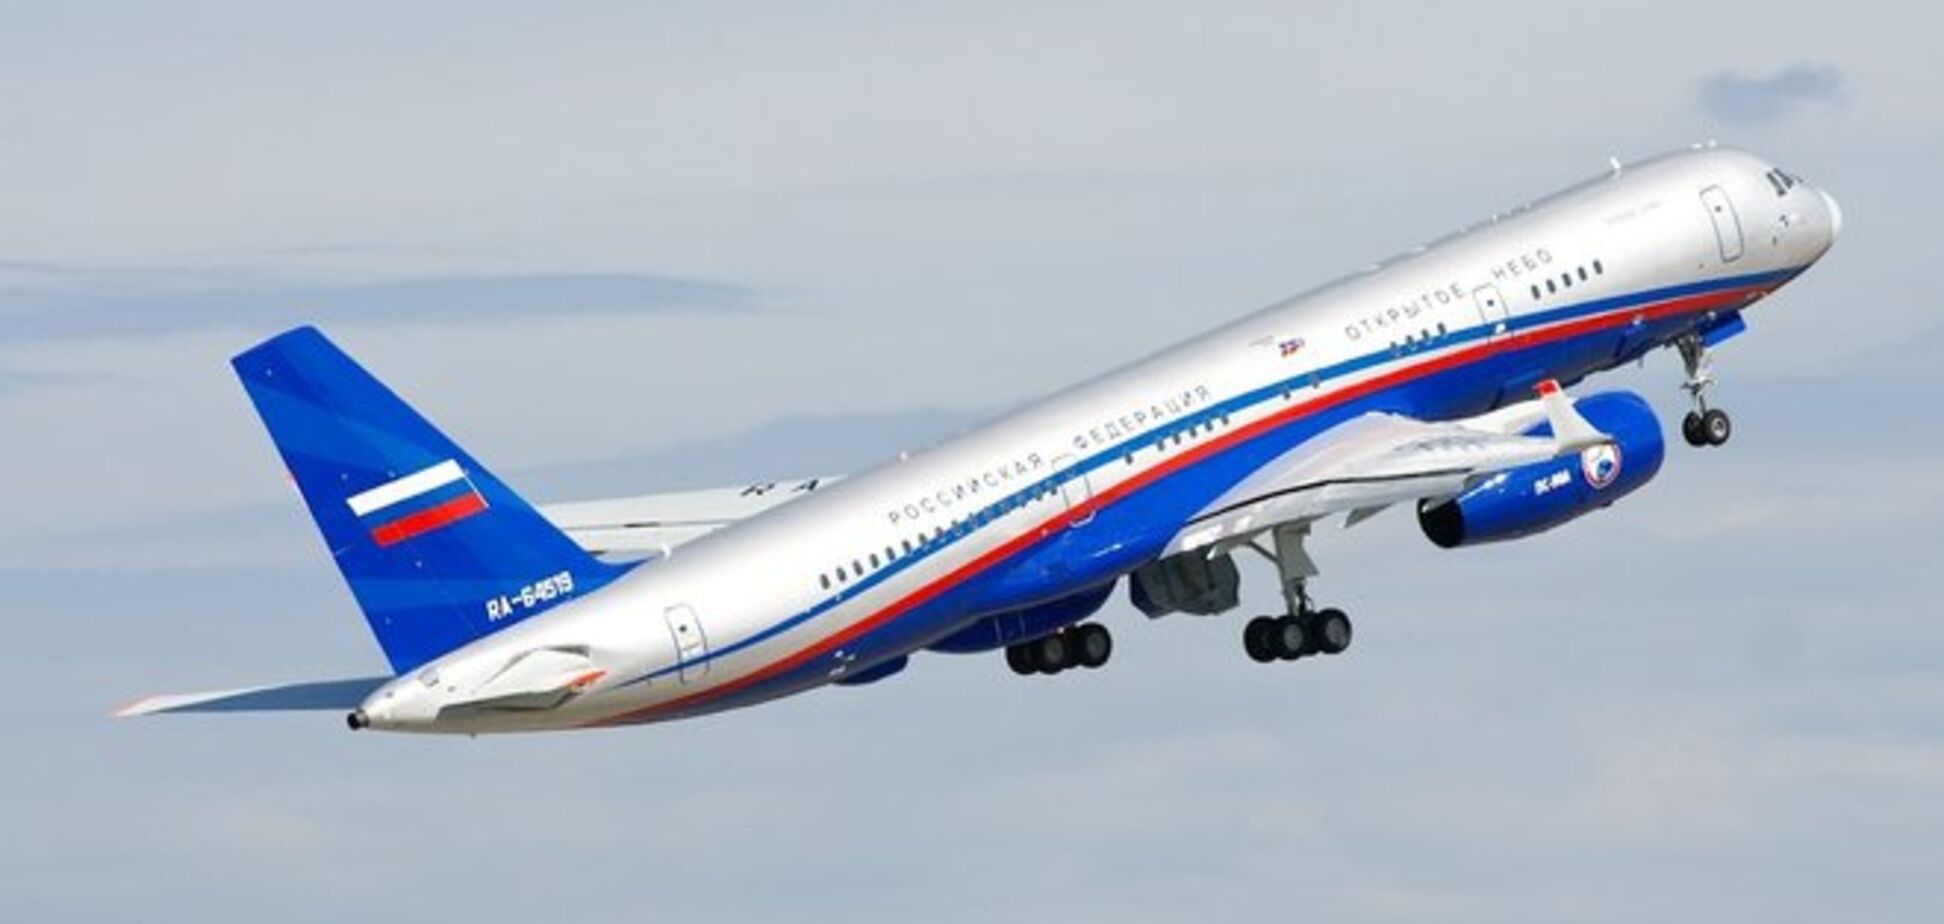 Вице-премьер РФ заявляет, что Украина не пустила его самолет в свое воздушное пространство